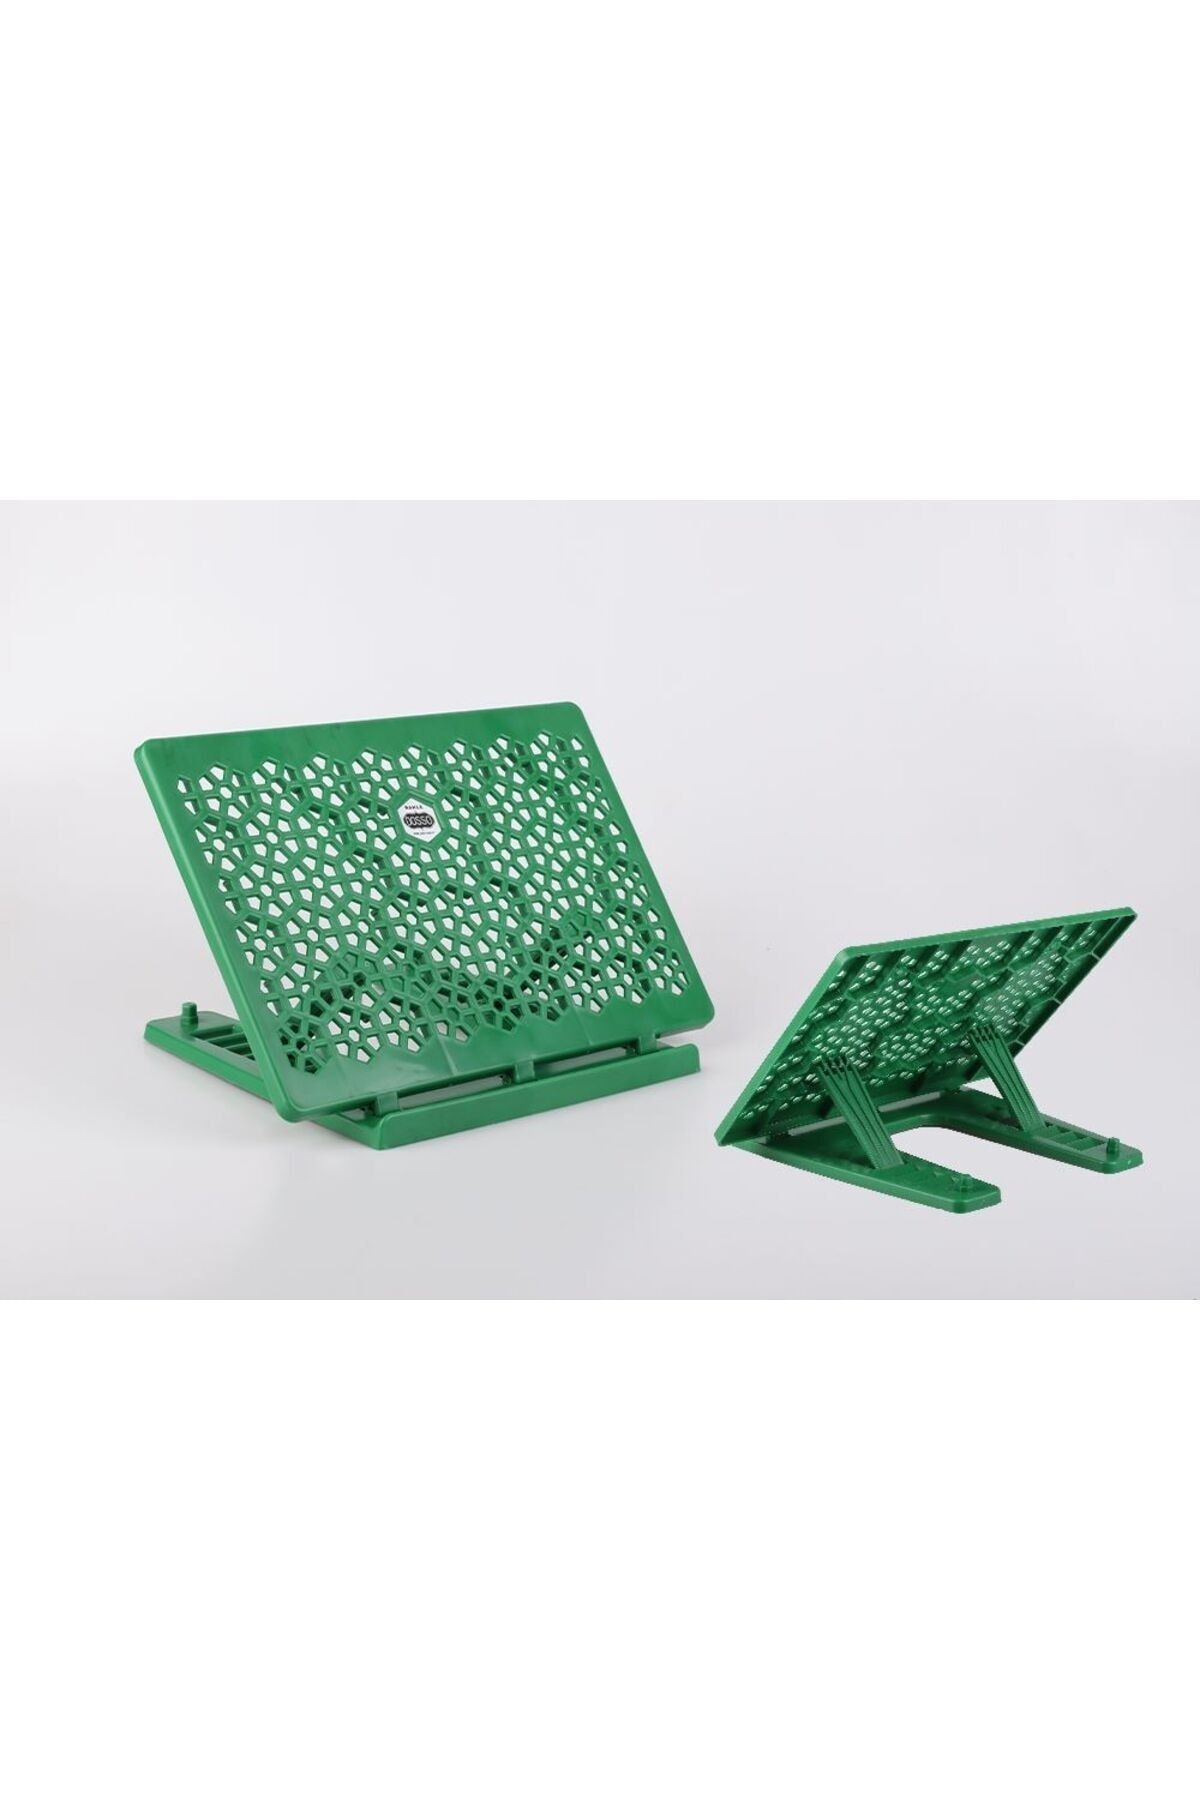 Derman masaüstü rahle pratik rahle kitap tutucu tablet tutucu yeşil